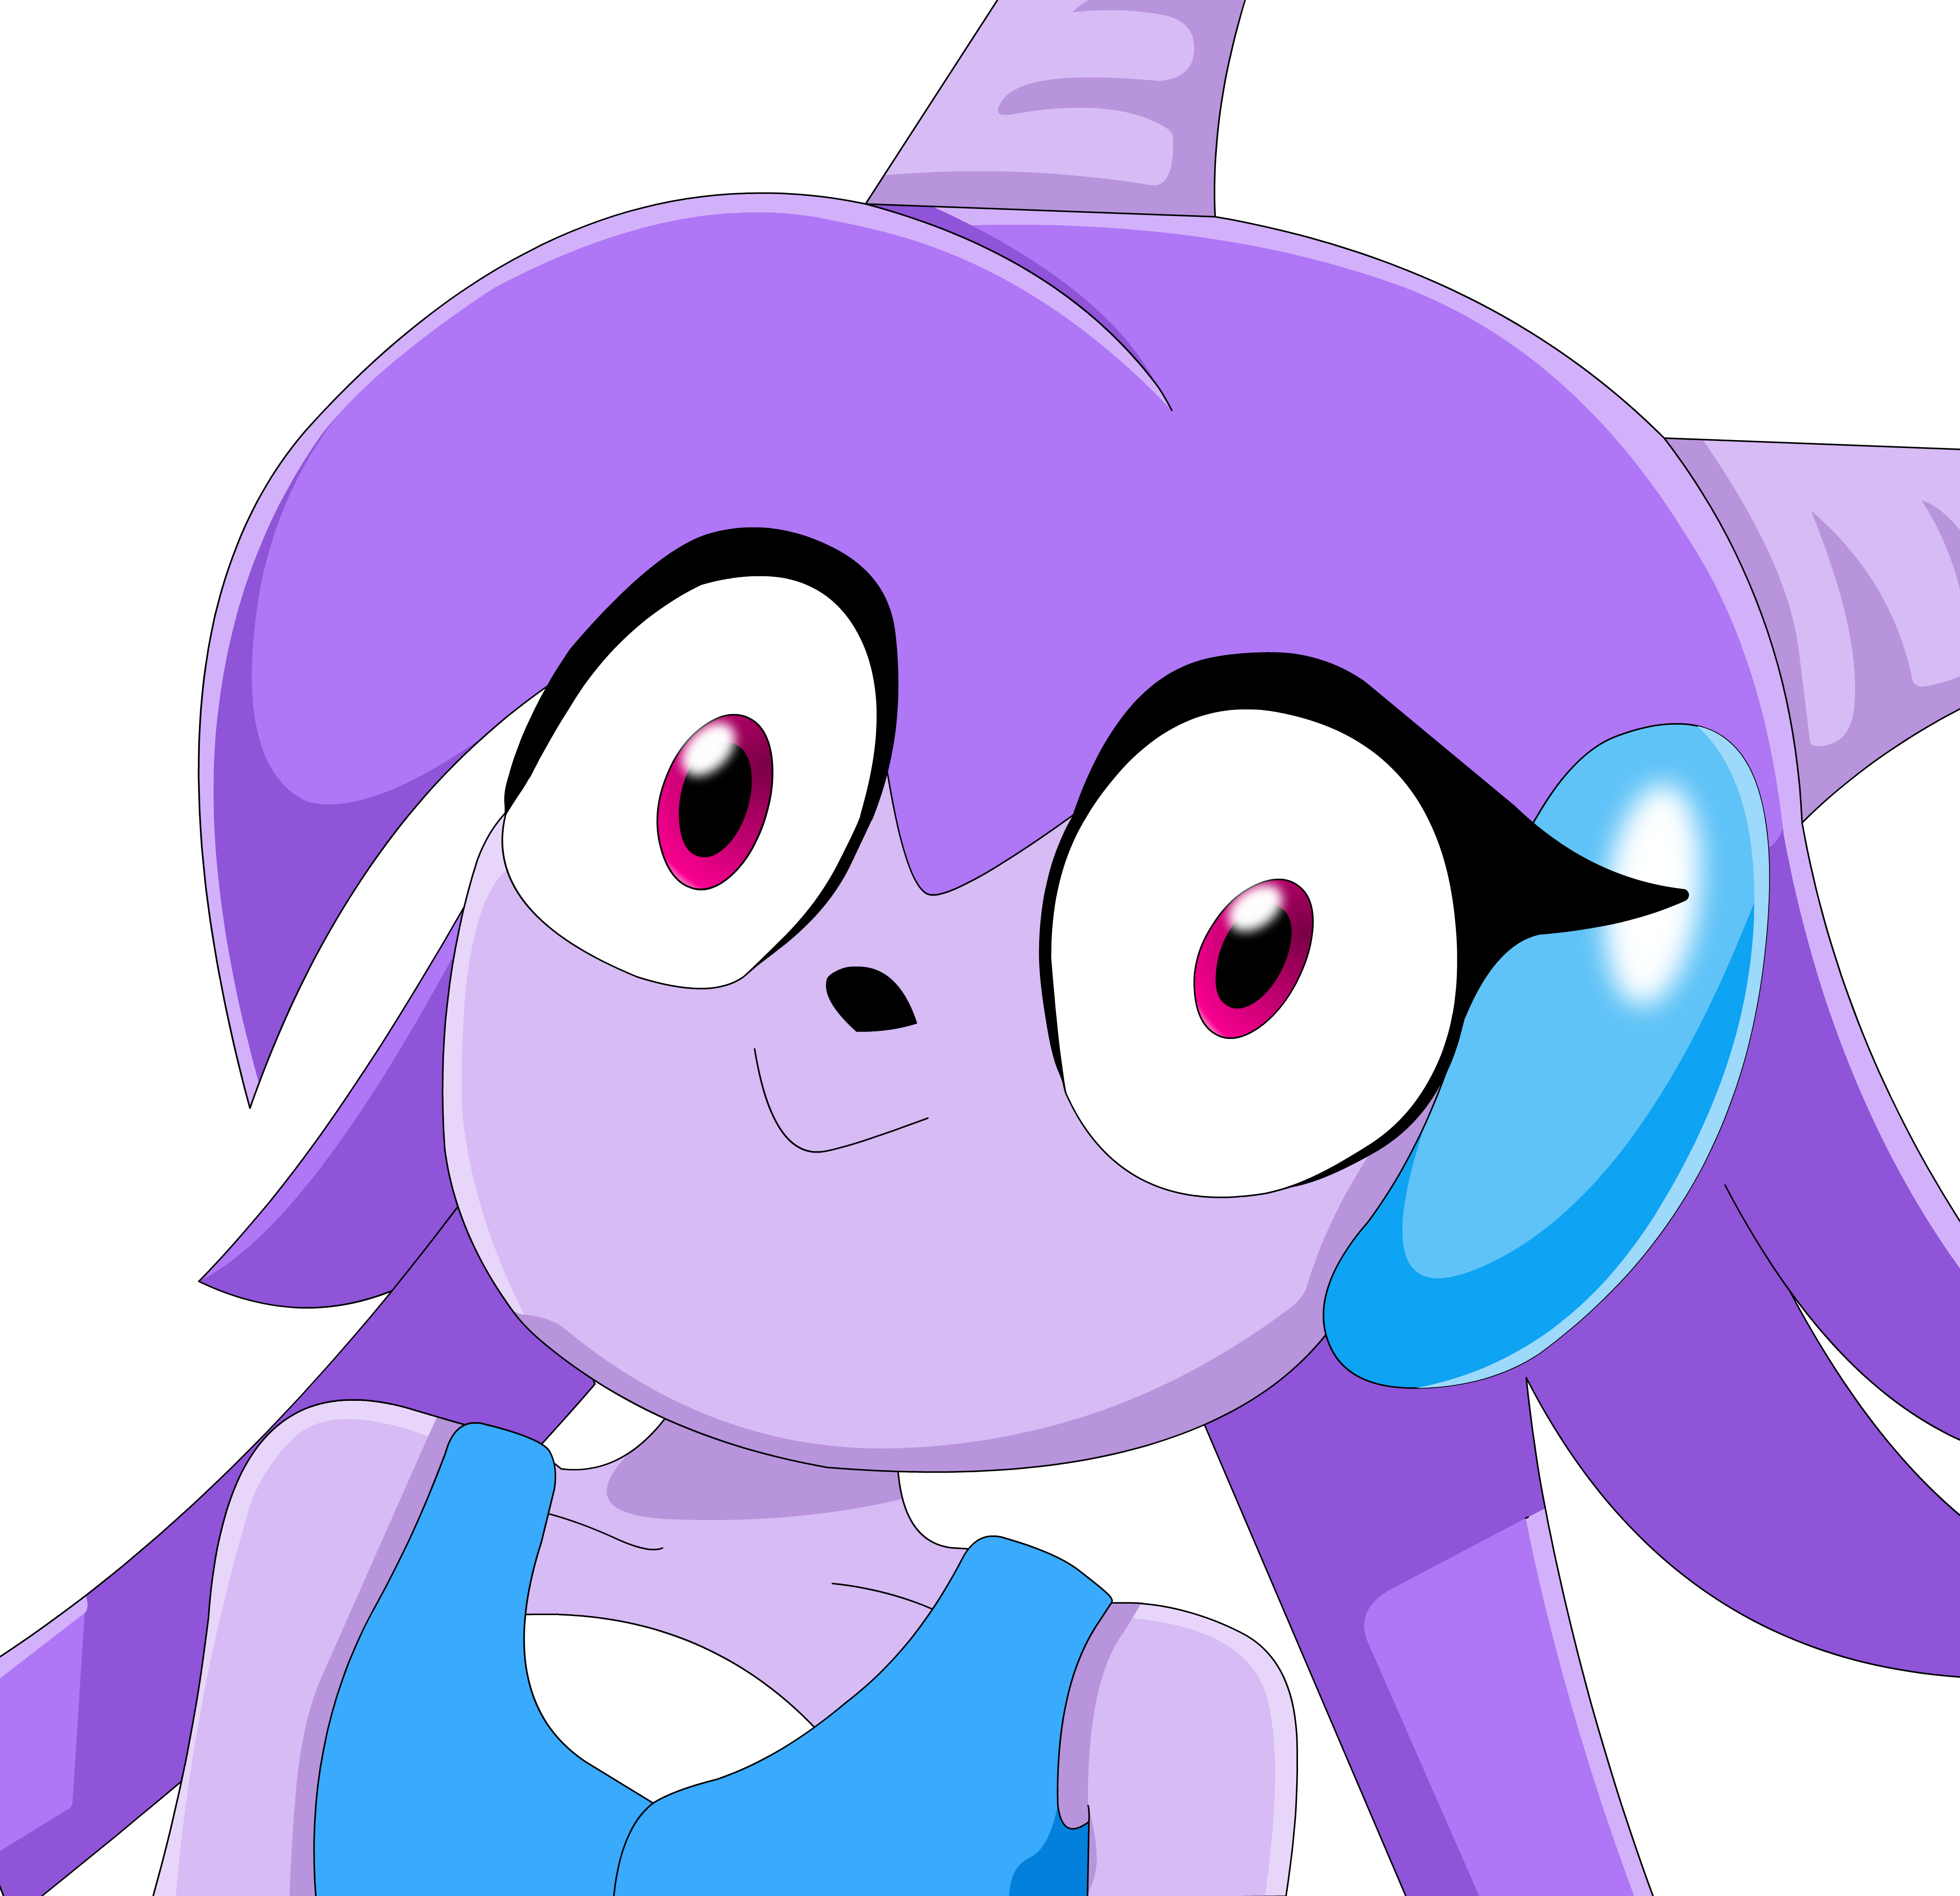 Main Image - Lilac Stare (4444x4300)